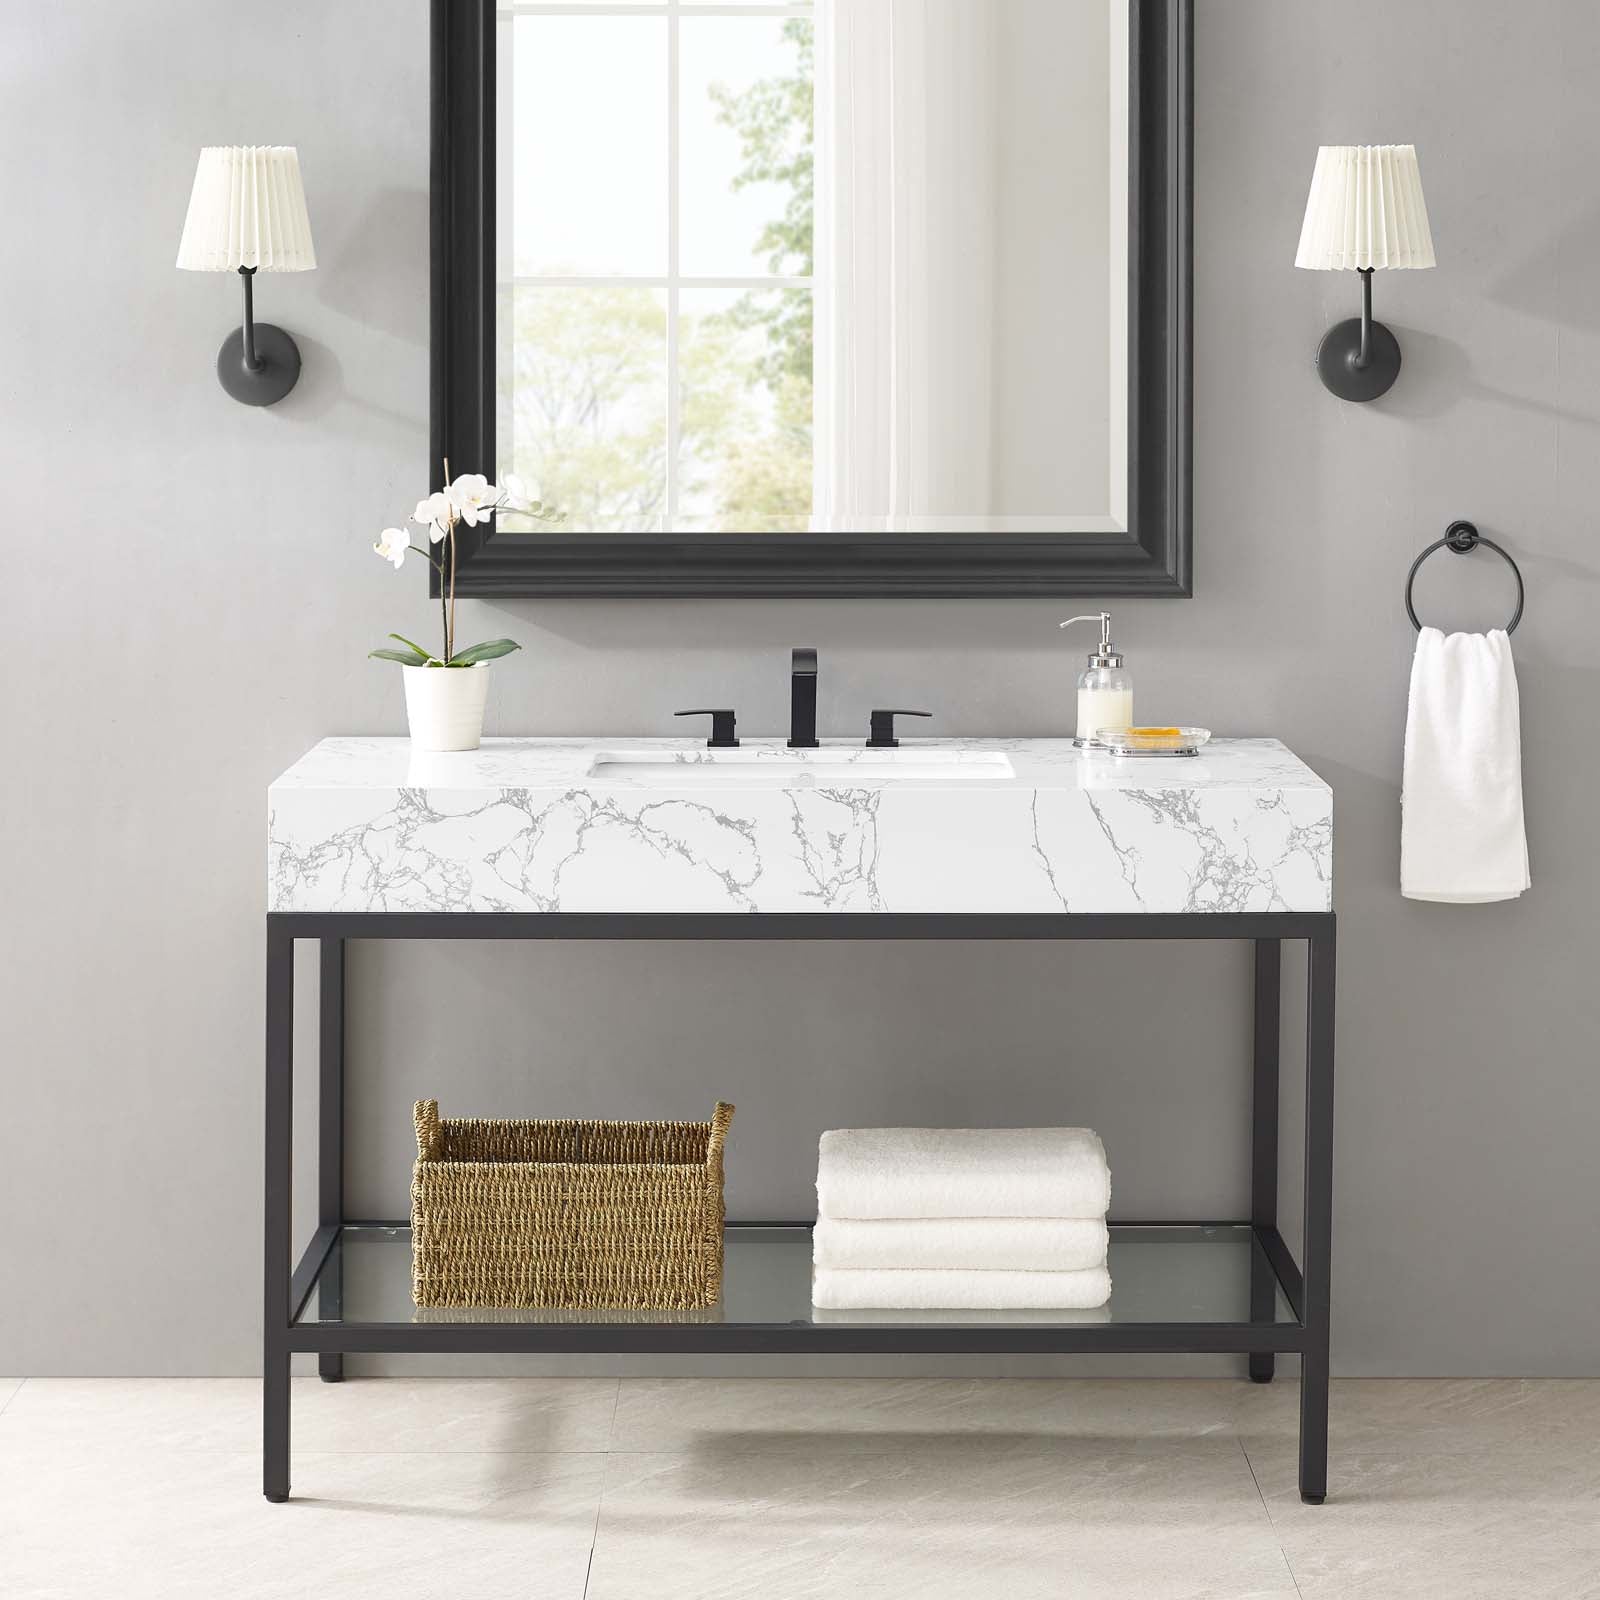 Kingsley 50" Black Stainless Steel Bathroom Vanity - East Shore Modern Home Furnishings